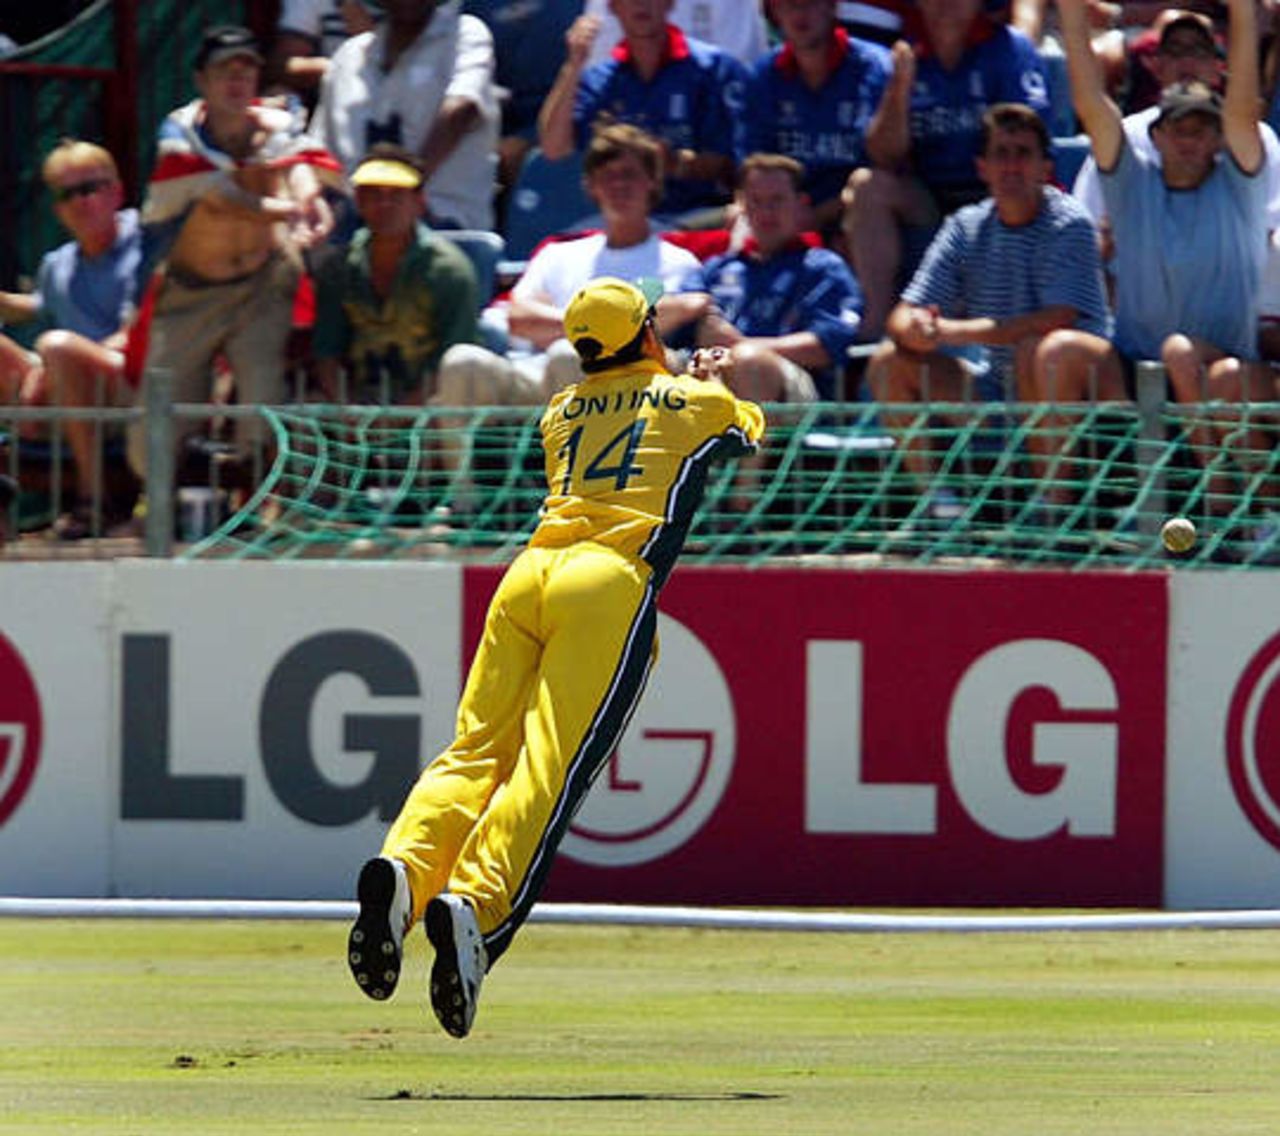 World Cup, 2003 - Australia v England at Port Elizabeth, 2nd March 2003